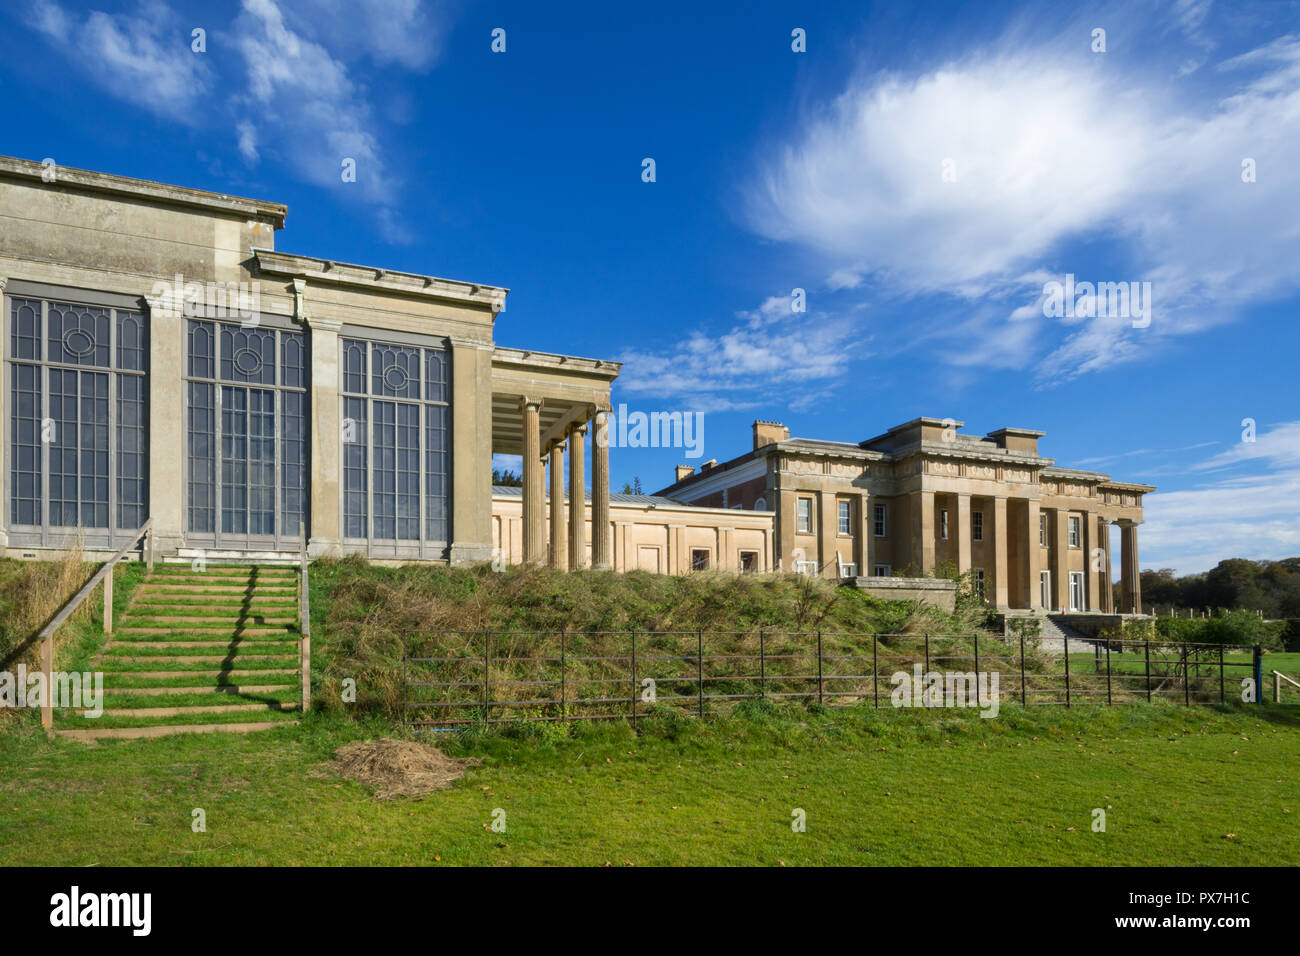 La Grange à Northington dans le Hampshire, au Royaume-Uni, un impressionnant manoir et le plus bel exemple en Angleterre de l'architecture néo-grec Banque D'Images